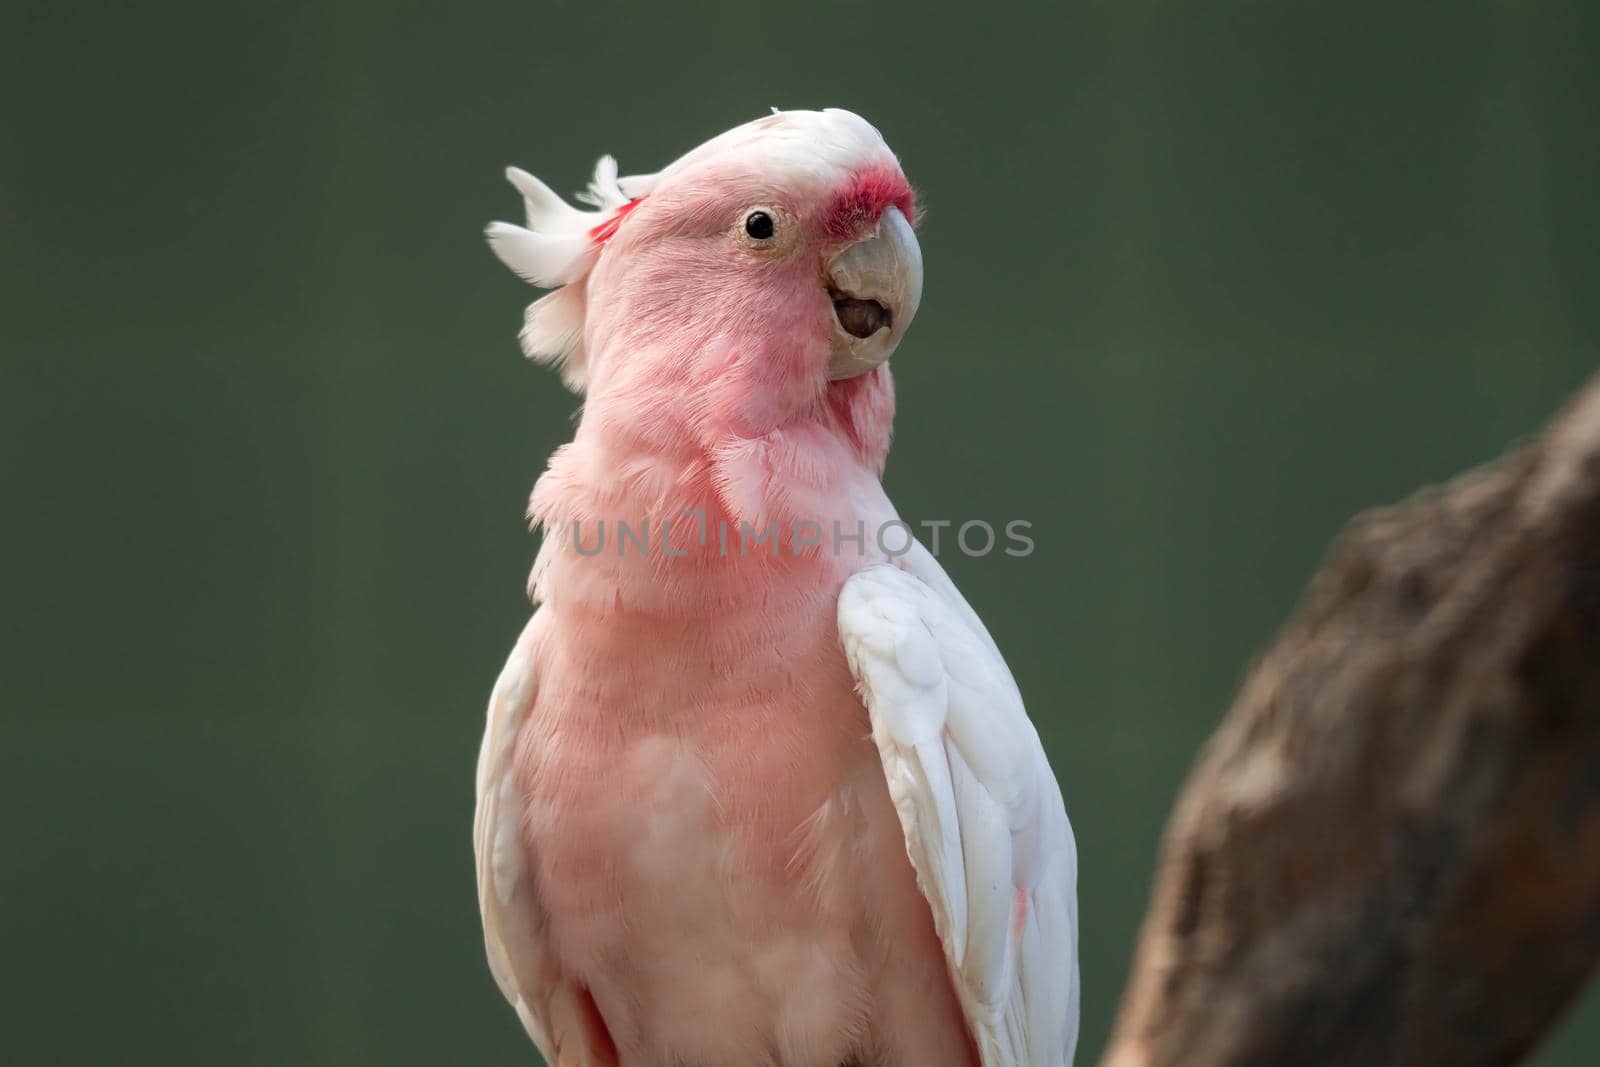 A Major Mitchell's cockatoo (Lophochroa leadbeateri), Pink parrot, often seen in Australia